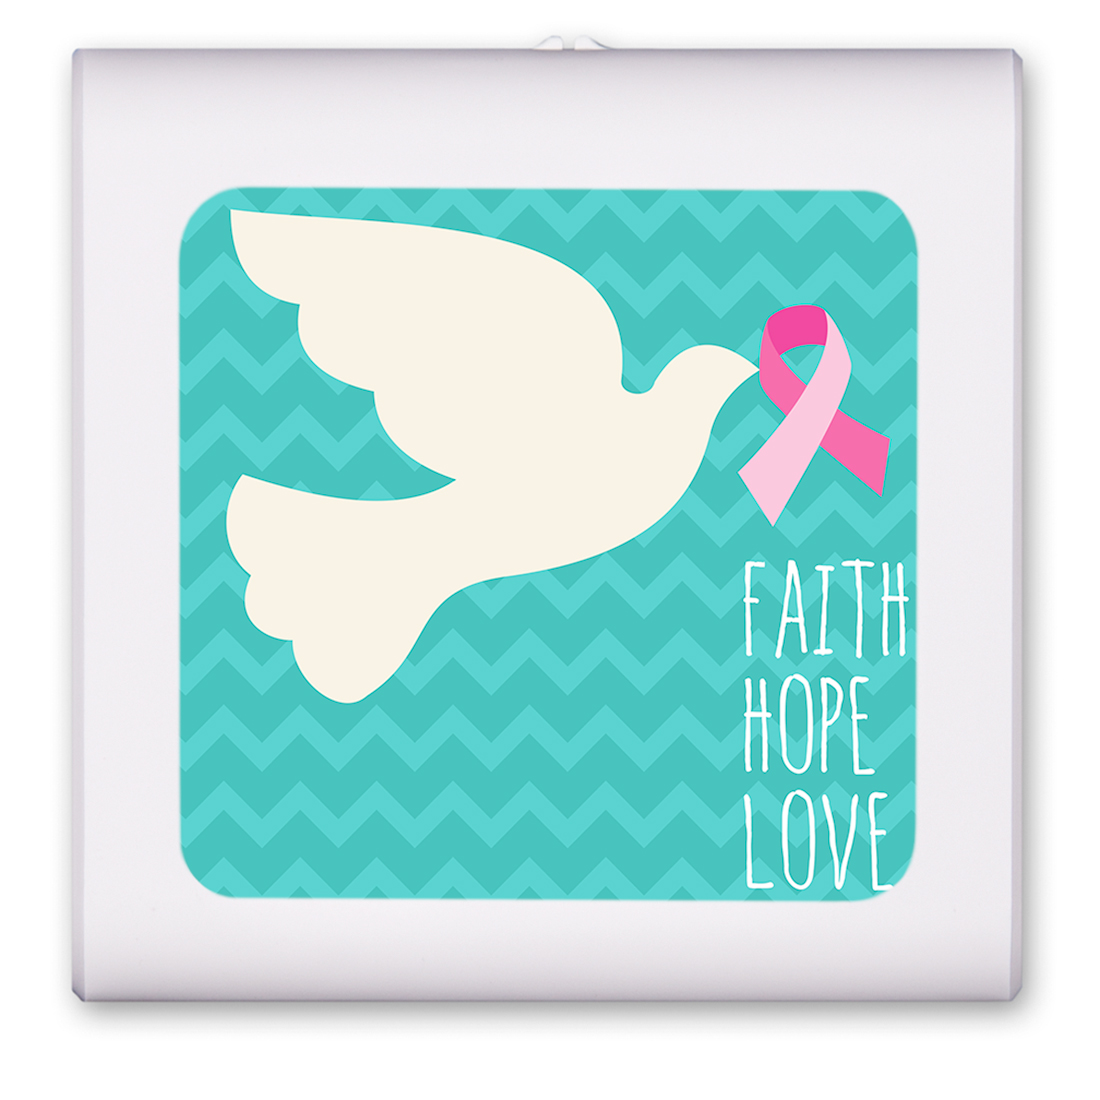 Cancer "Faith, Hope, Love" - #2562